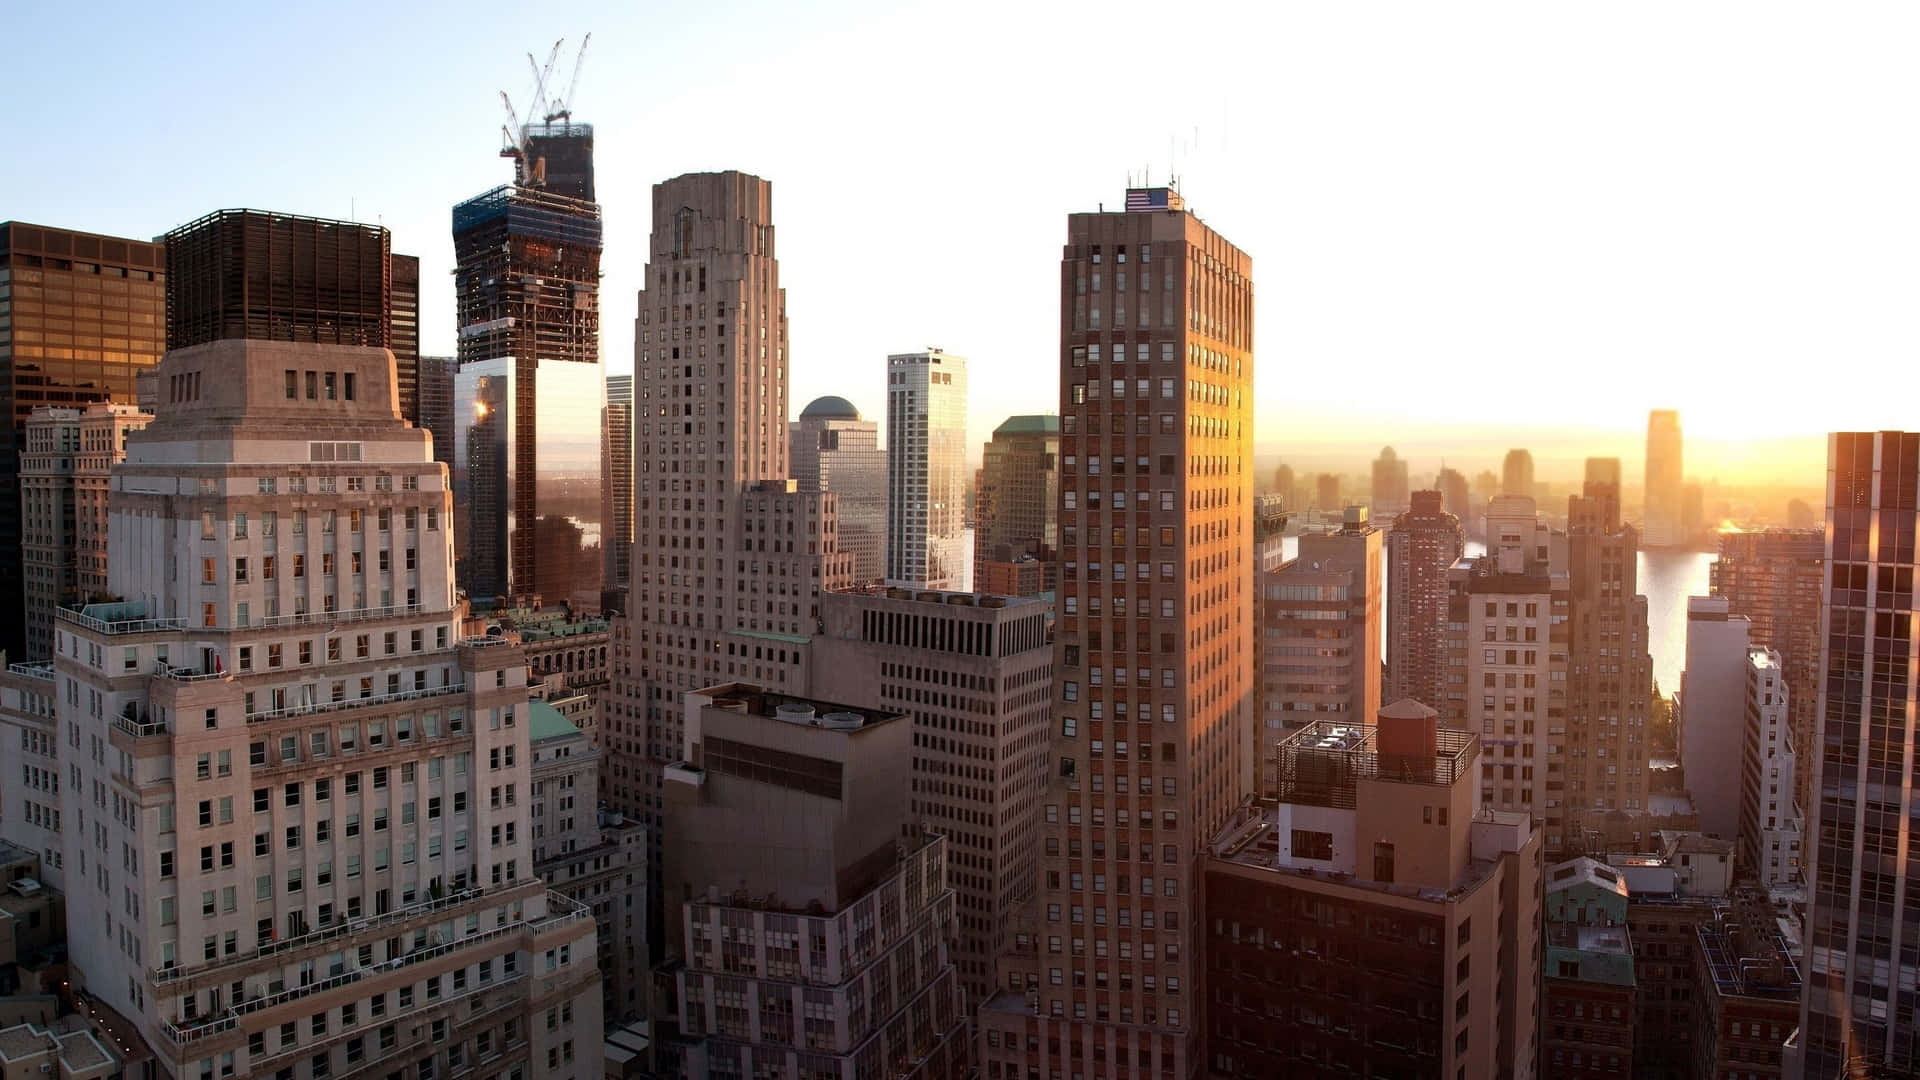 Hdhintergrundbild Des Sonnenaufgangs In New York